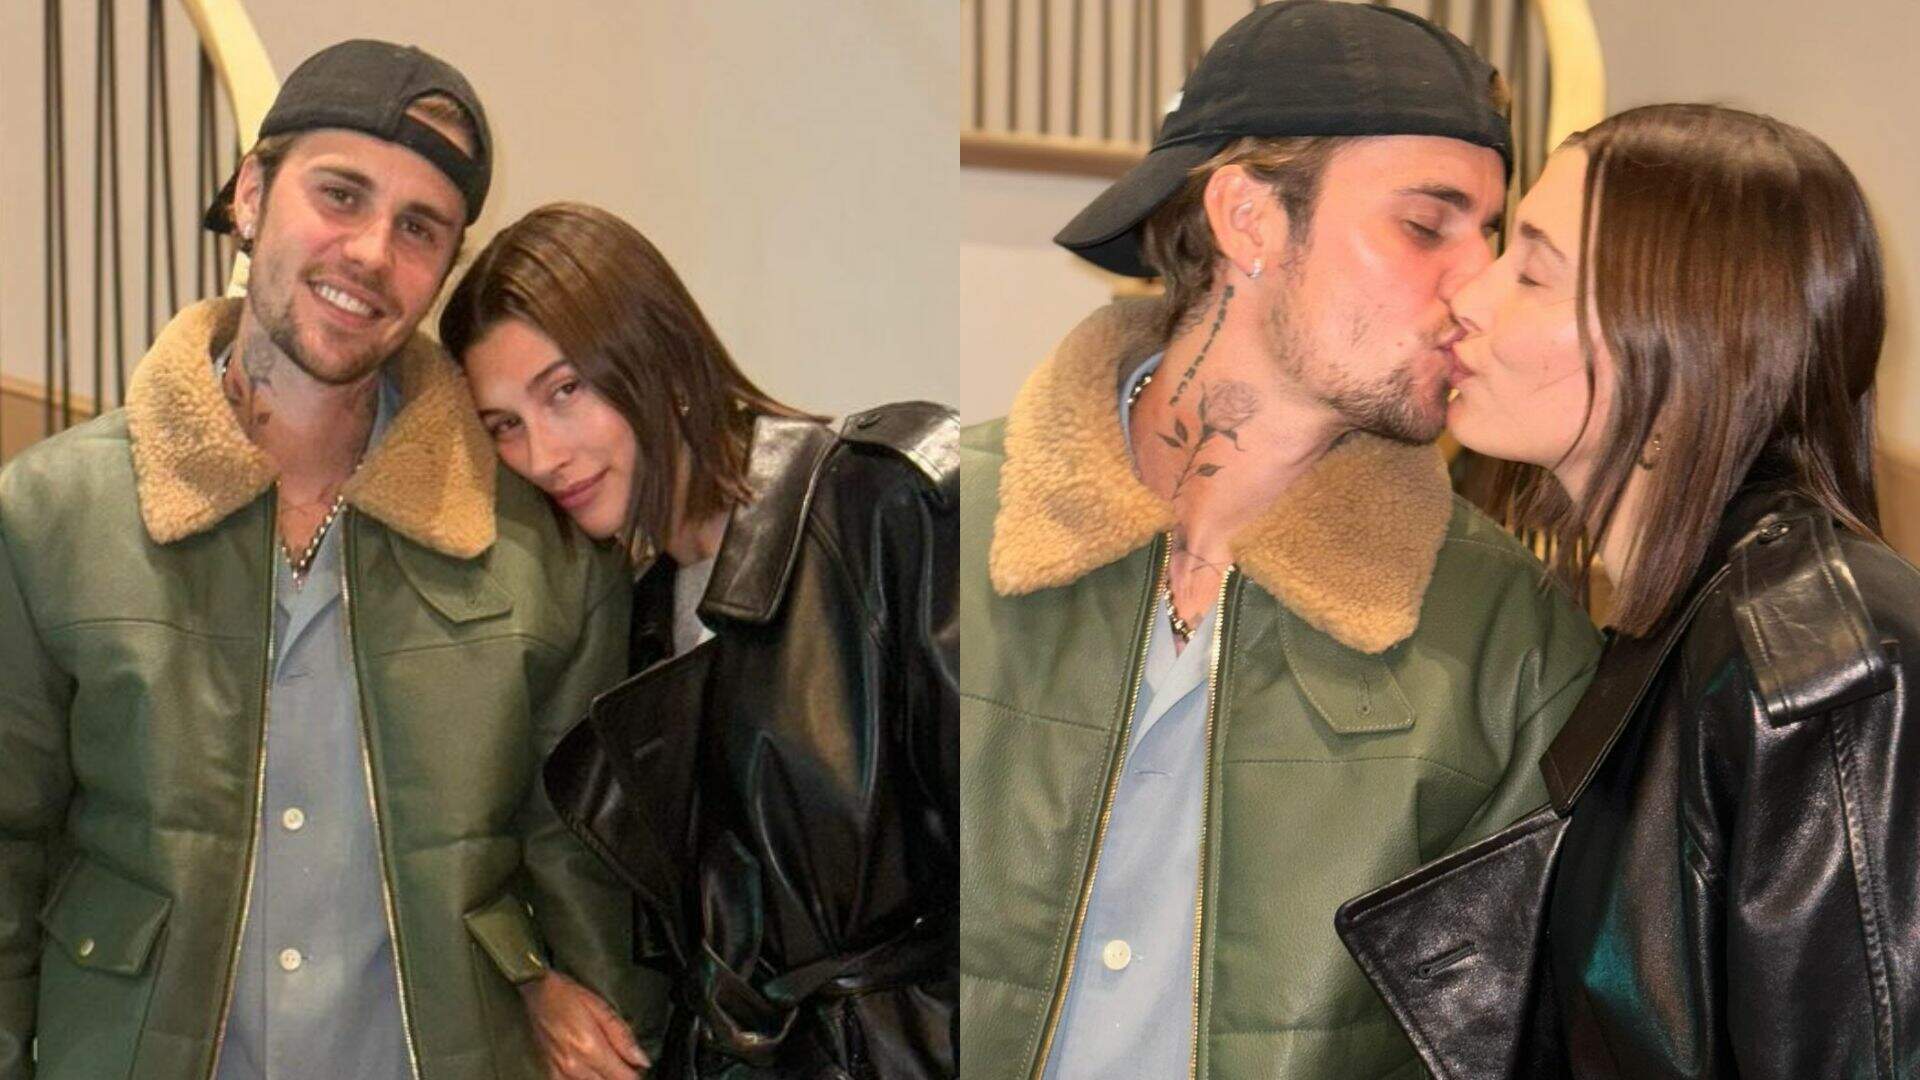 Casalzão! Justin e Hailey Bieber surgem com looks estilosos e em clima de romance - Metropolitana FM